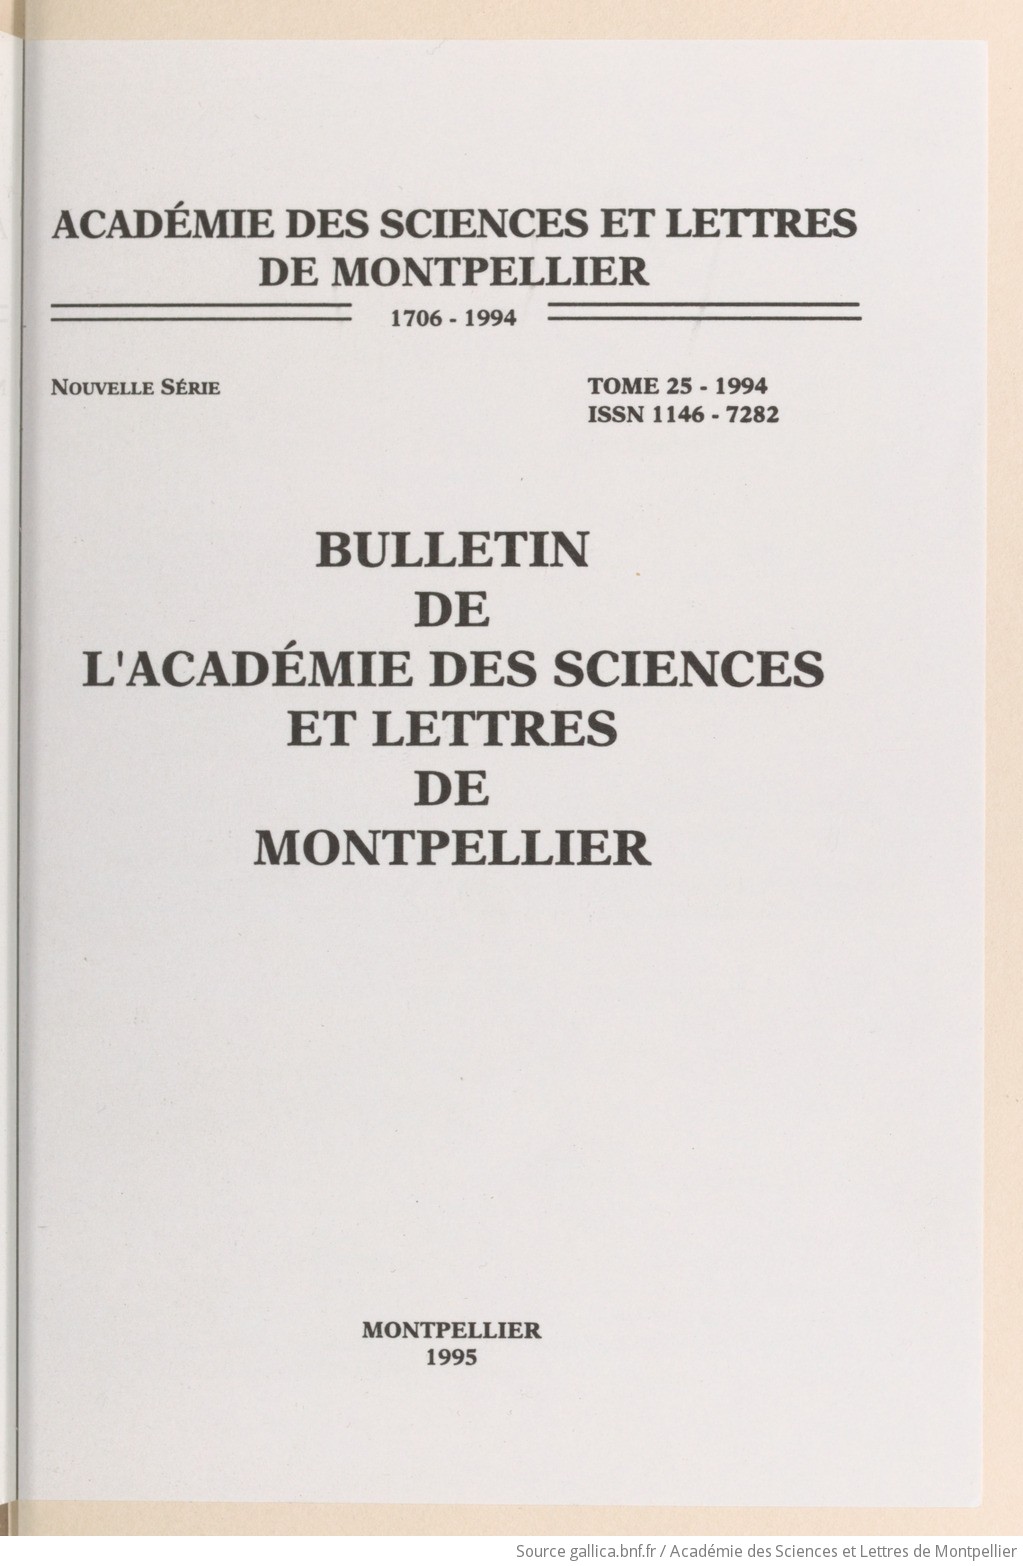 Bulletin mensuel de l'Académie des sciences et lettres de Montpellier